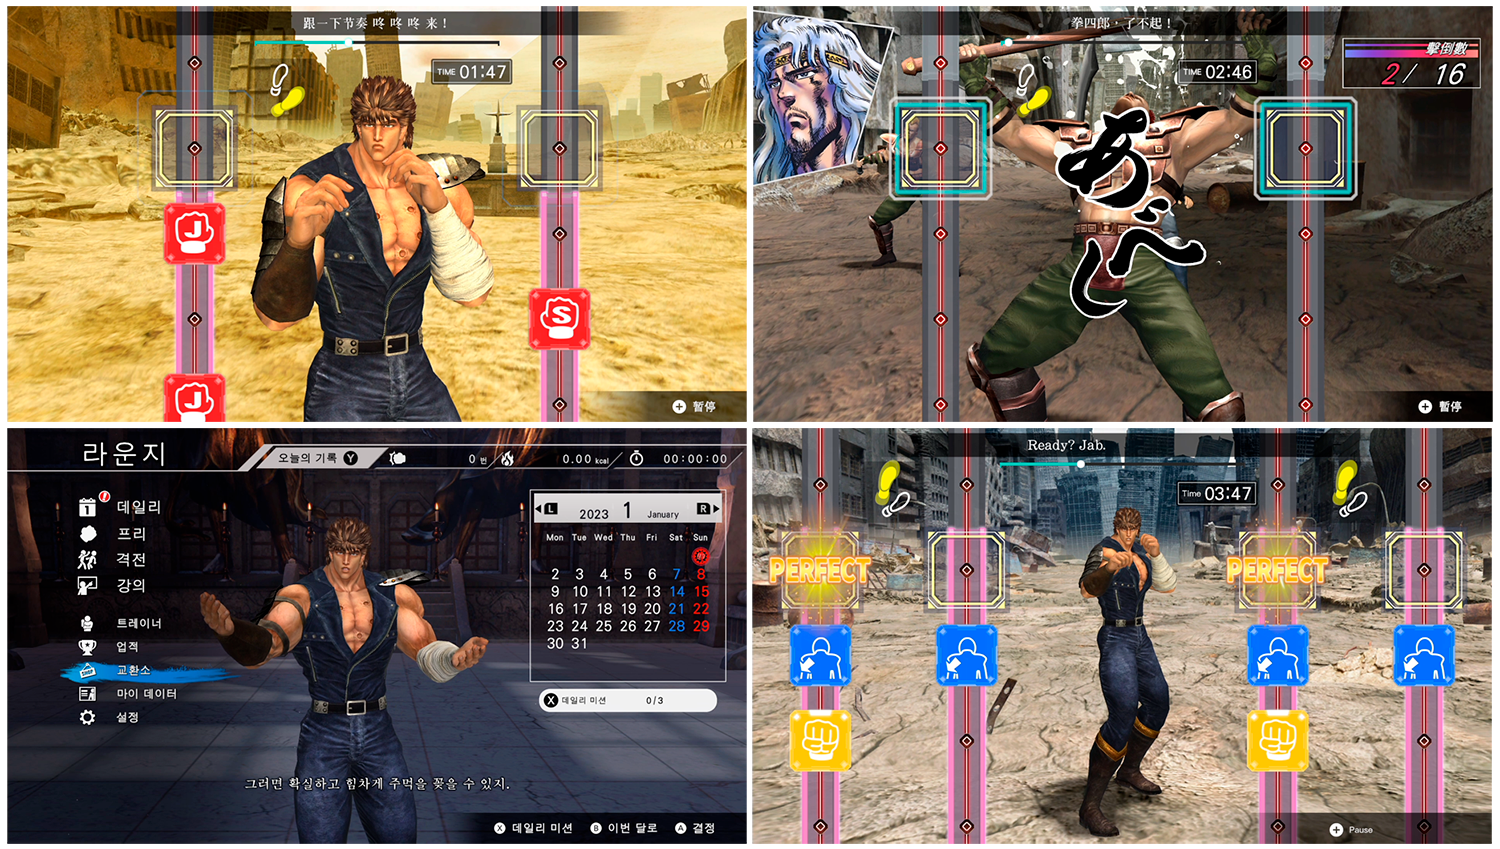 Nintendo Switch ソフト「Fit Boxing 北斗の拳」アジア地域での予約開始のお知らせ2